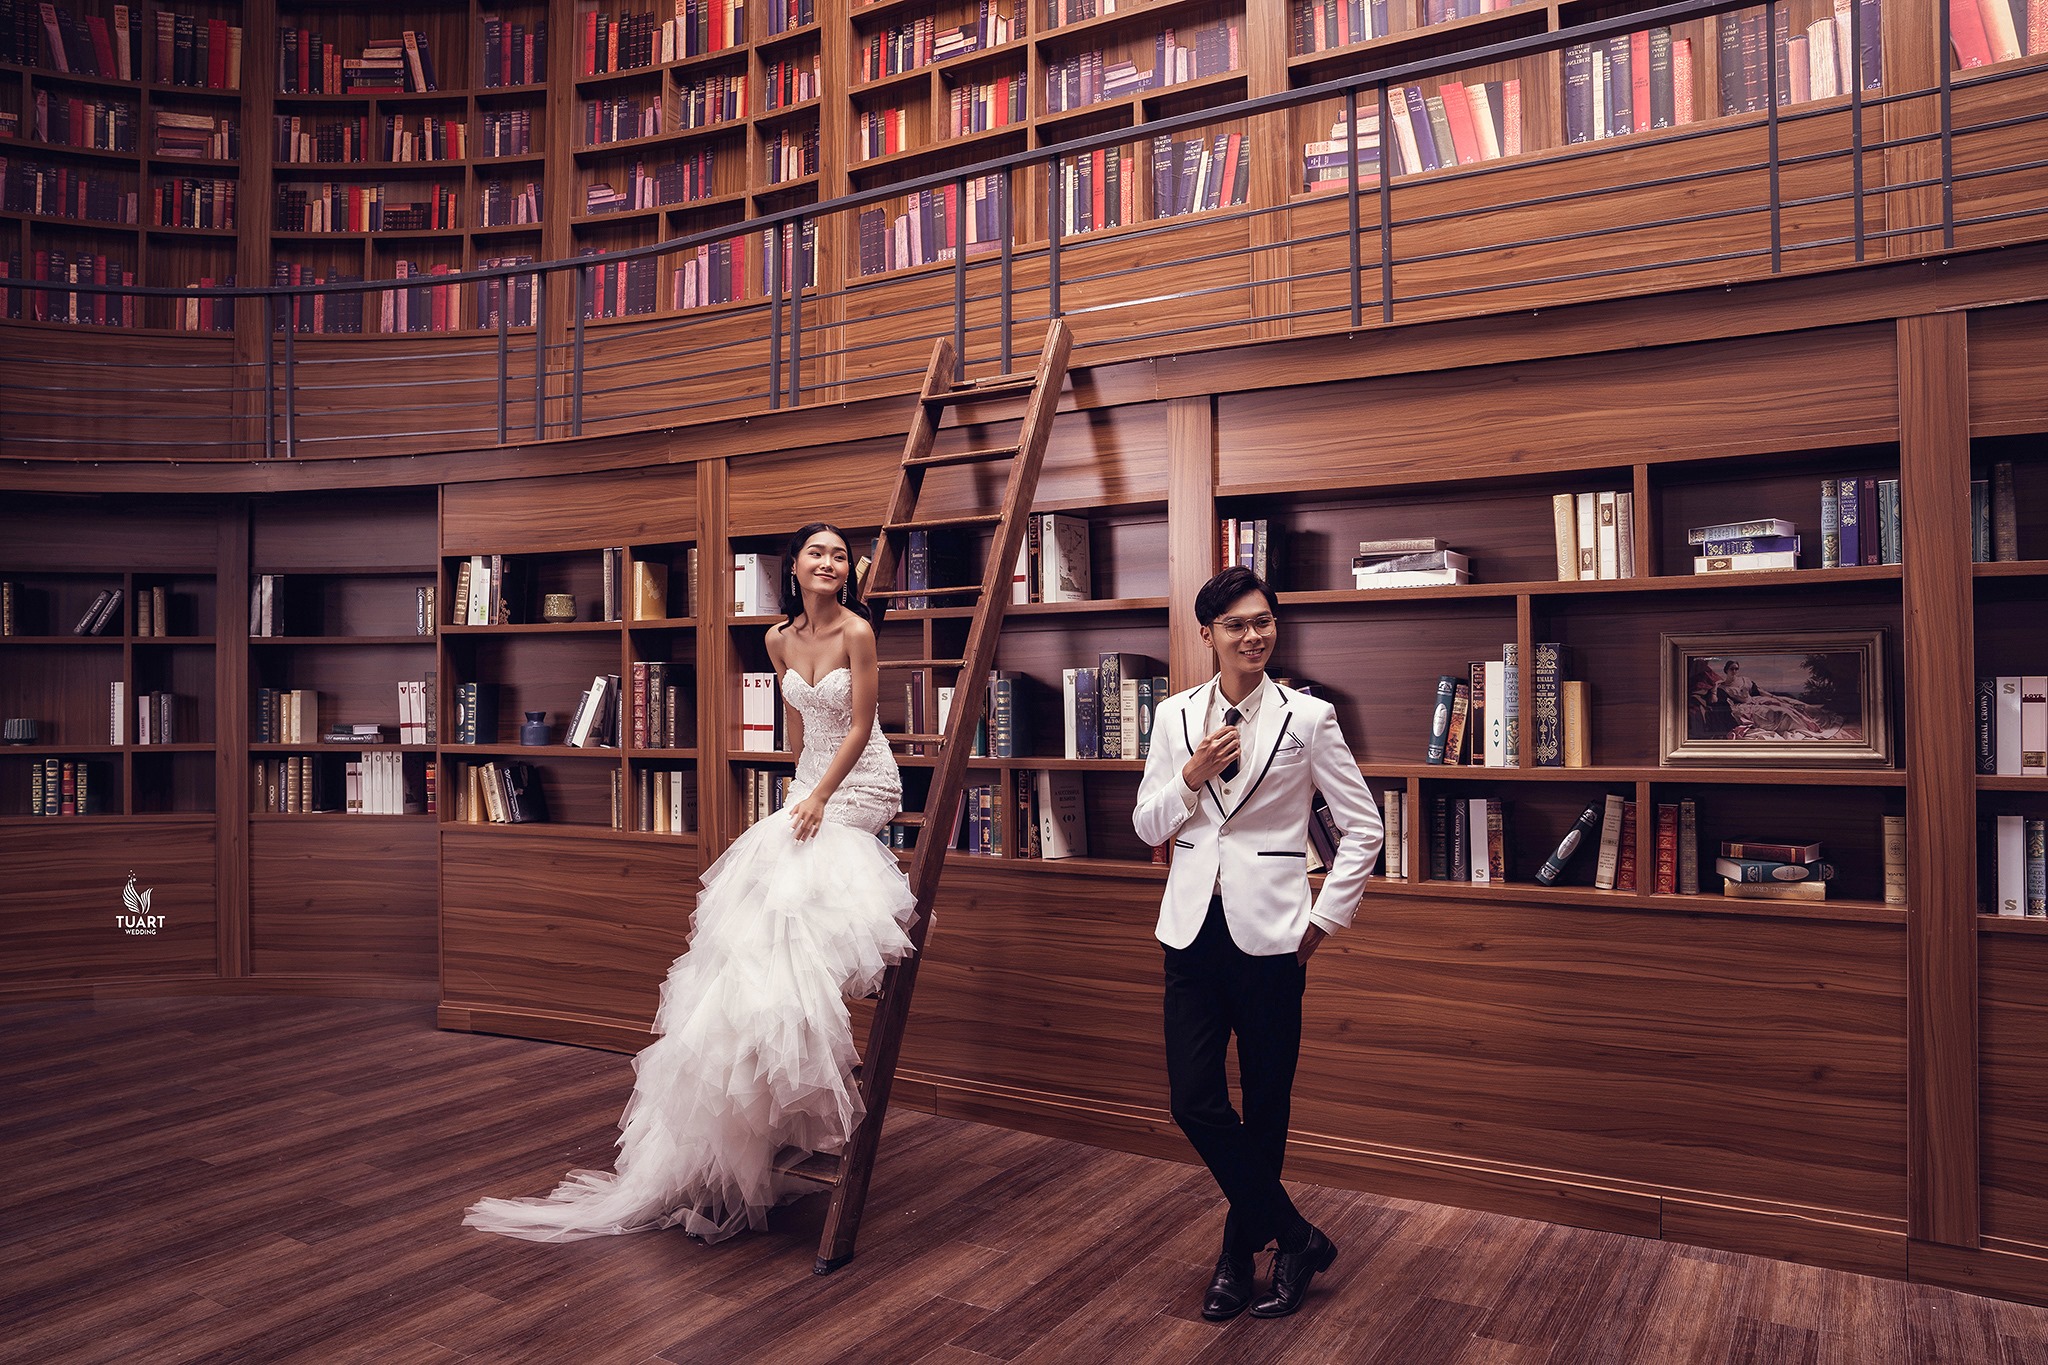 Album chụp ảnh cưới đẹp tại Hà Nội: 5 Graden Studio